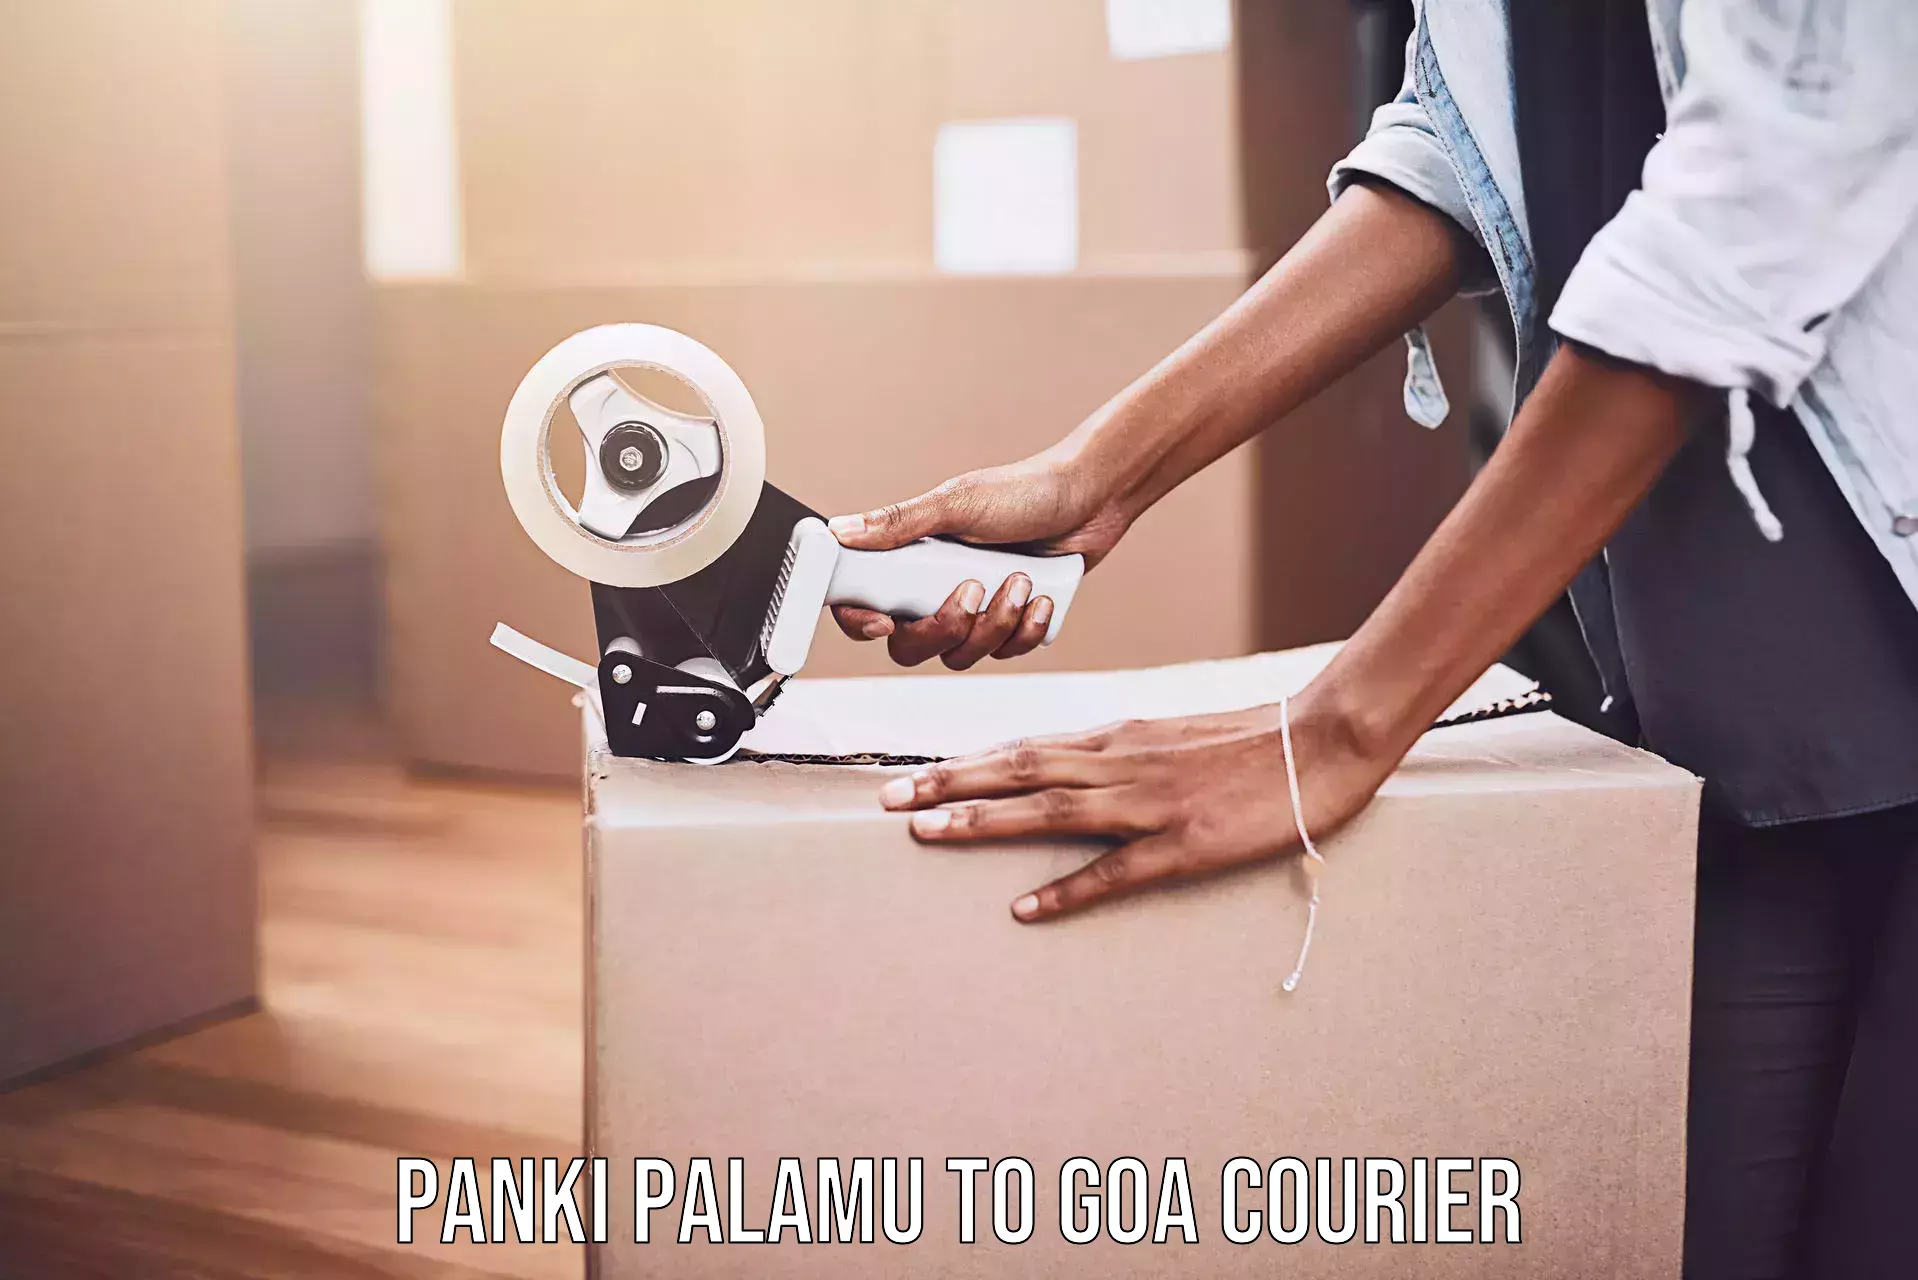 Nationwide shipping services Panki Palamu to Panaji